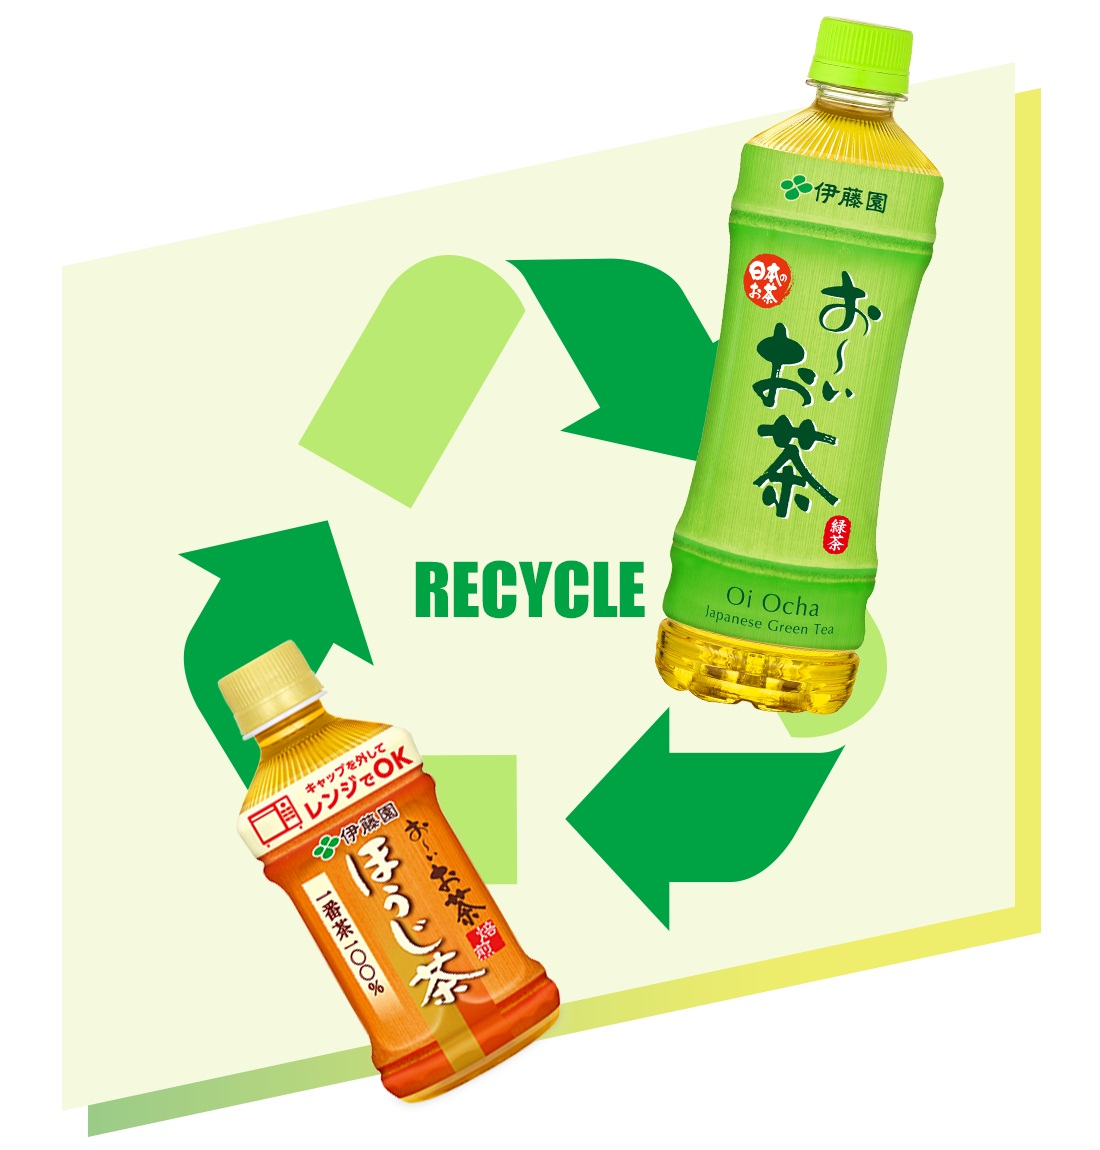 お いお茶 ブランド製品 100 リサイクルペットボトル の採用について ニュースリリース 伊藤園